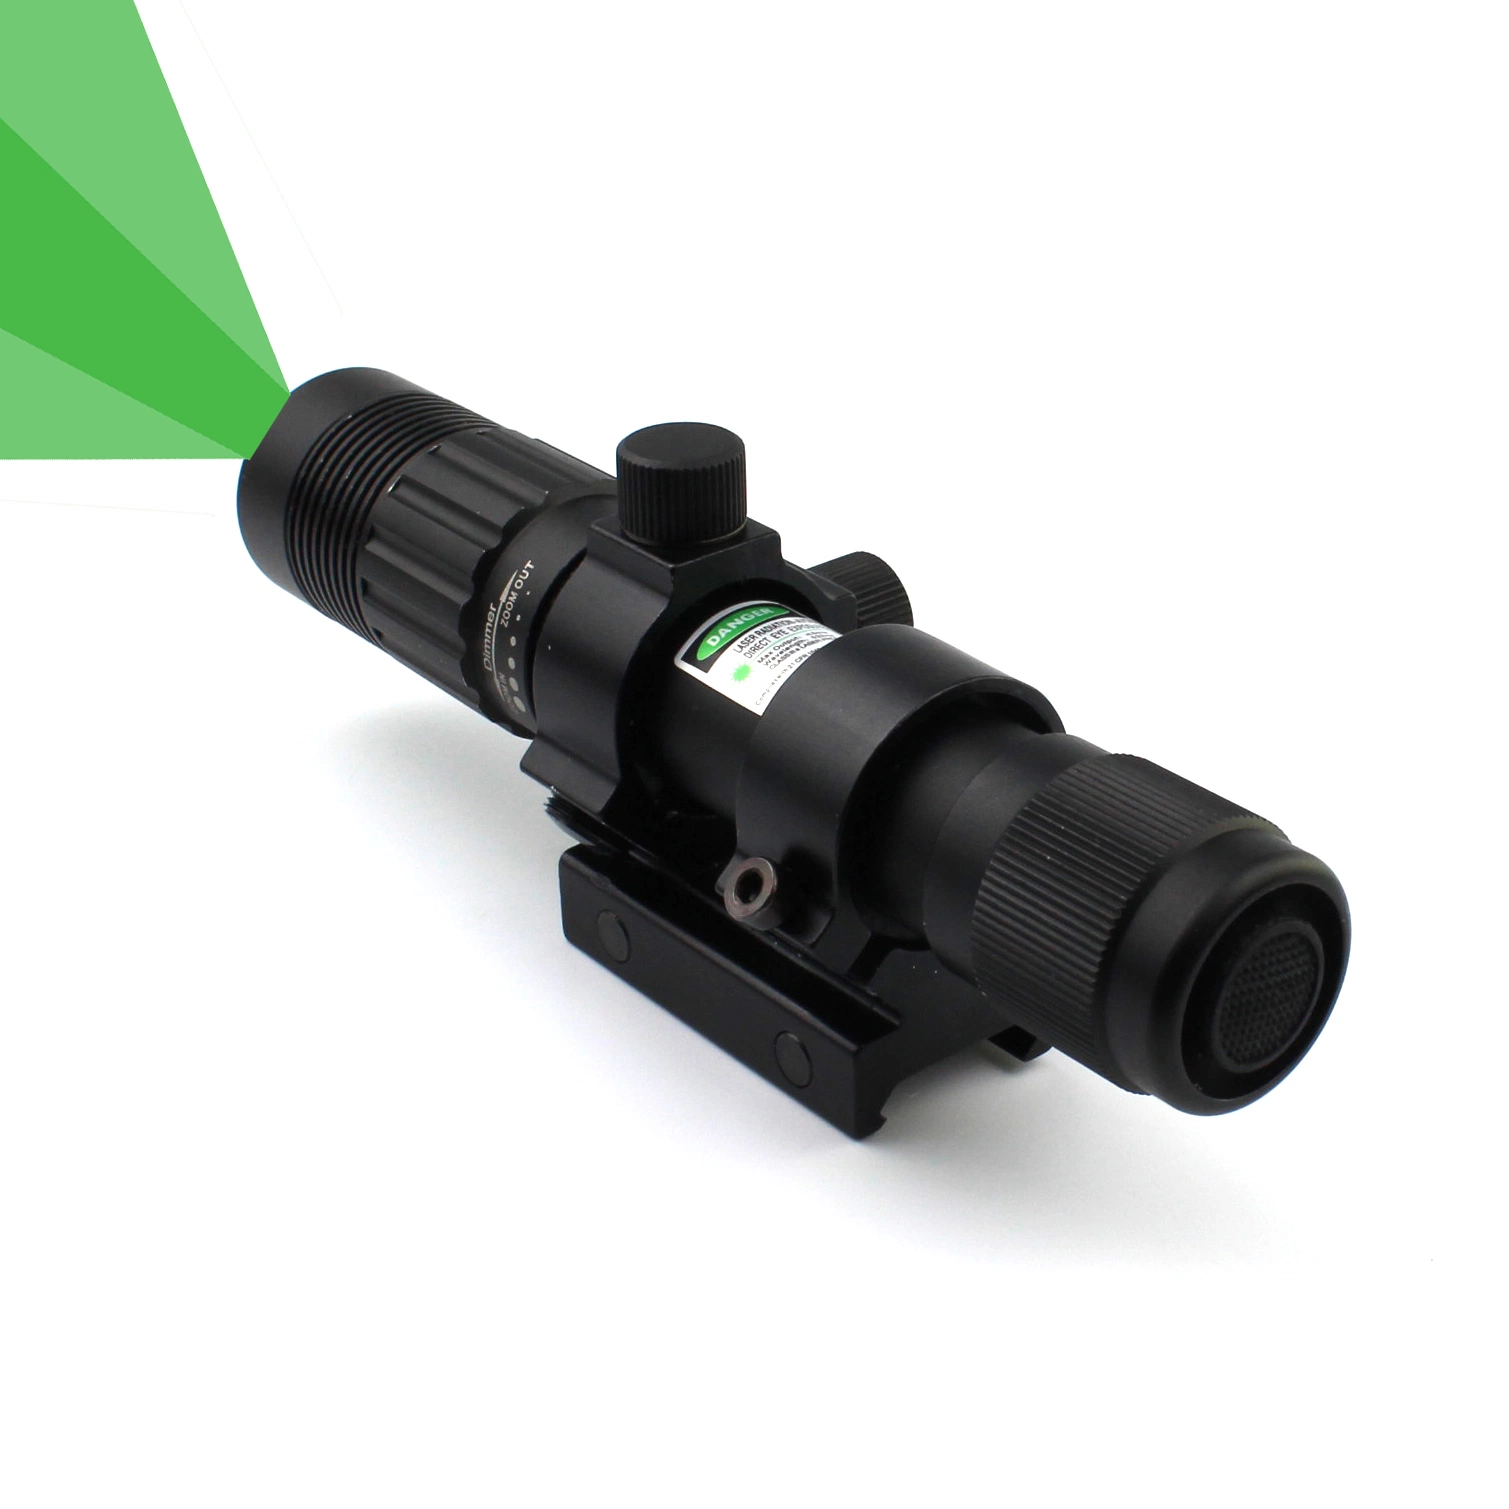 Проводной переключатель для решения Night Vision Scope и кольцо осциллографа В комплект входит зеленый ослепительный лазерный сканер и фонарик-фонарик с подсветкой